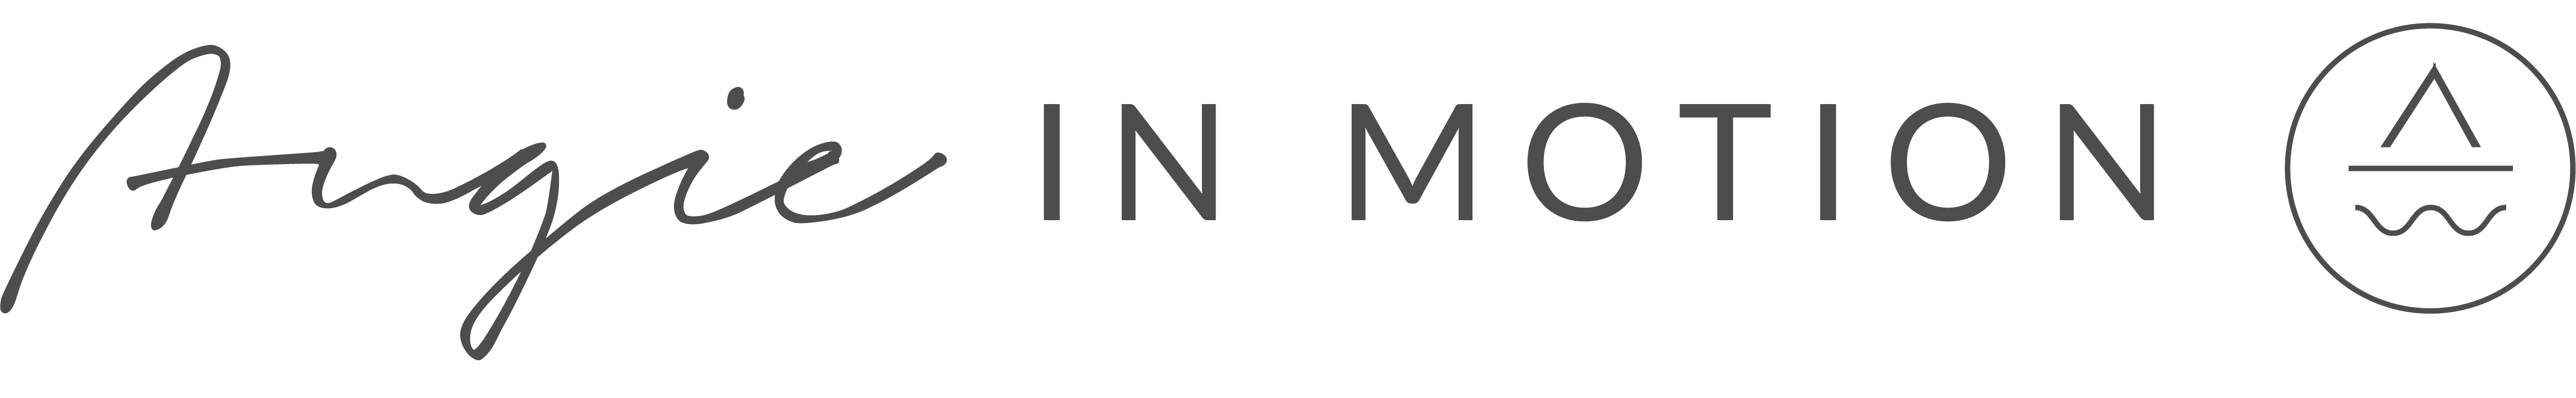 gen logo